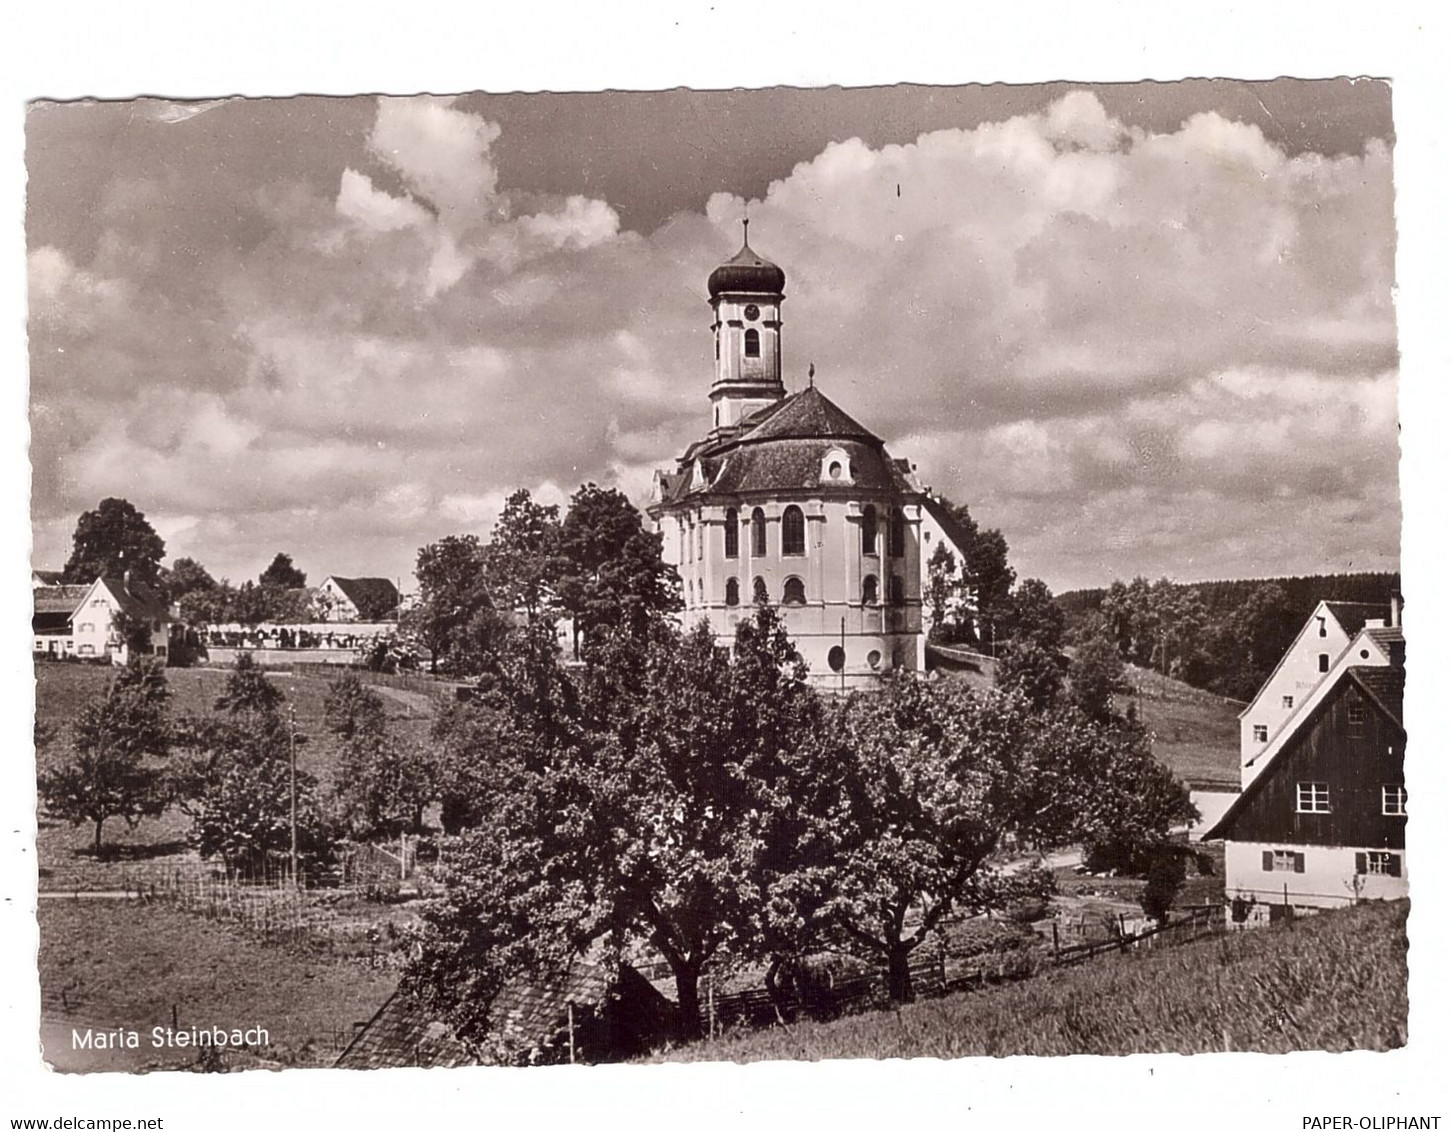 8945 LEGAU - MARIA STEINBACH, Pfarrkirche, Landpoststempel  "14b Ausnang über Leutkirch", 1960 - Mindelheim